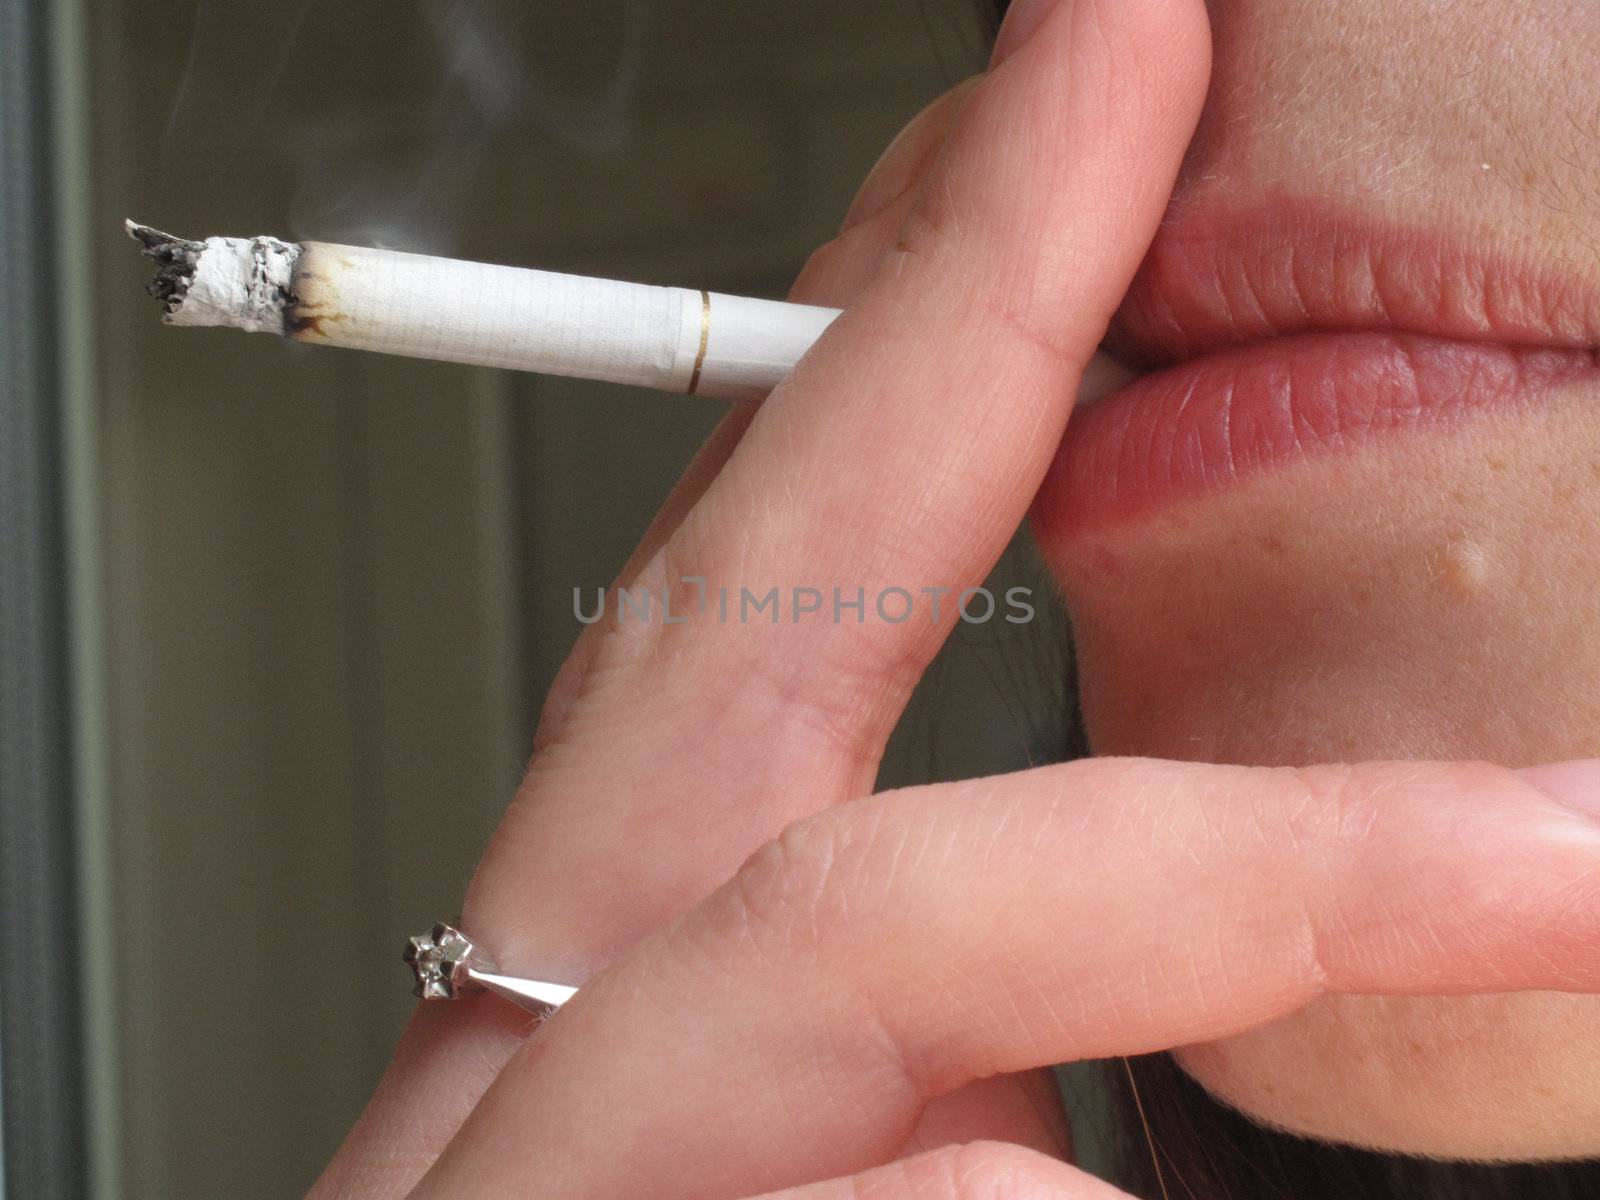 Smoker woman by Alenmax